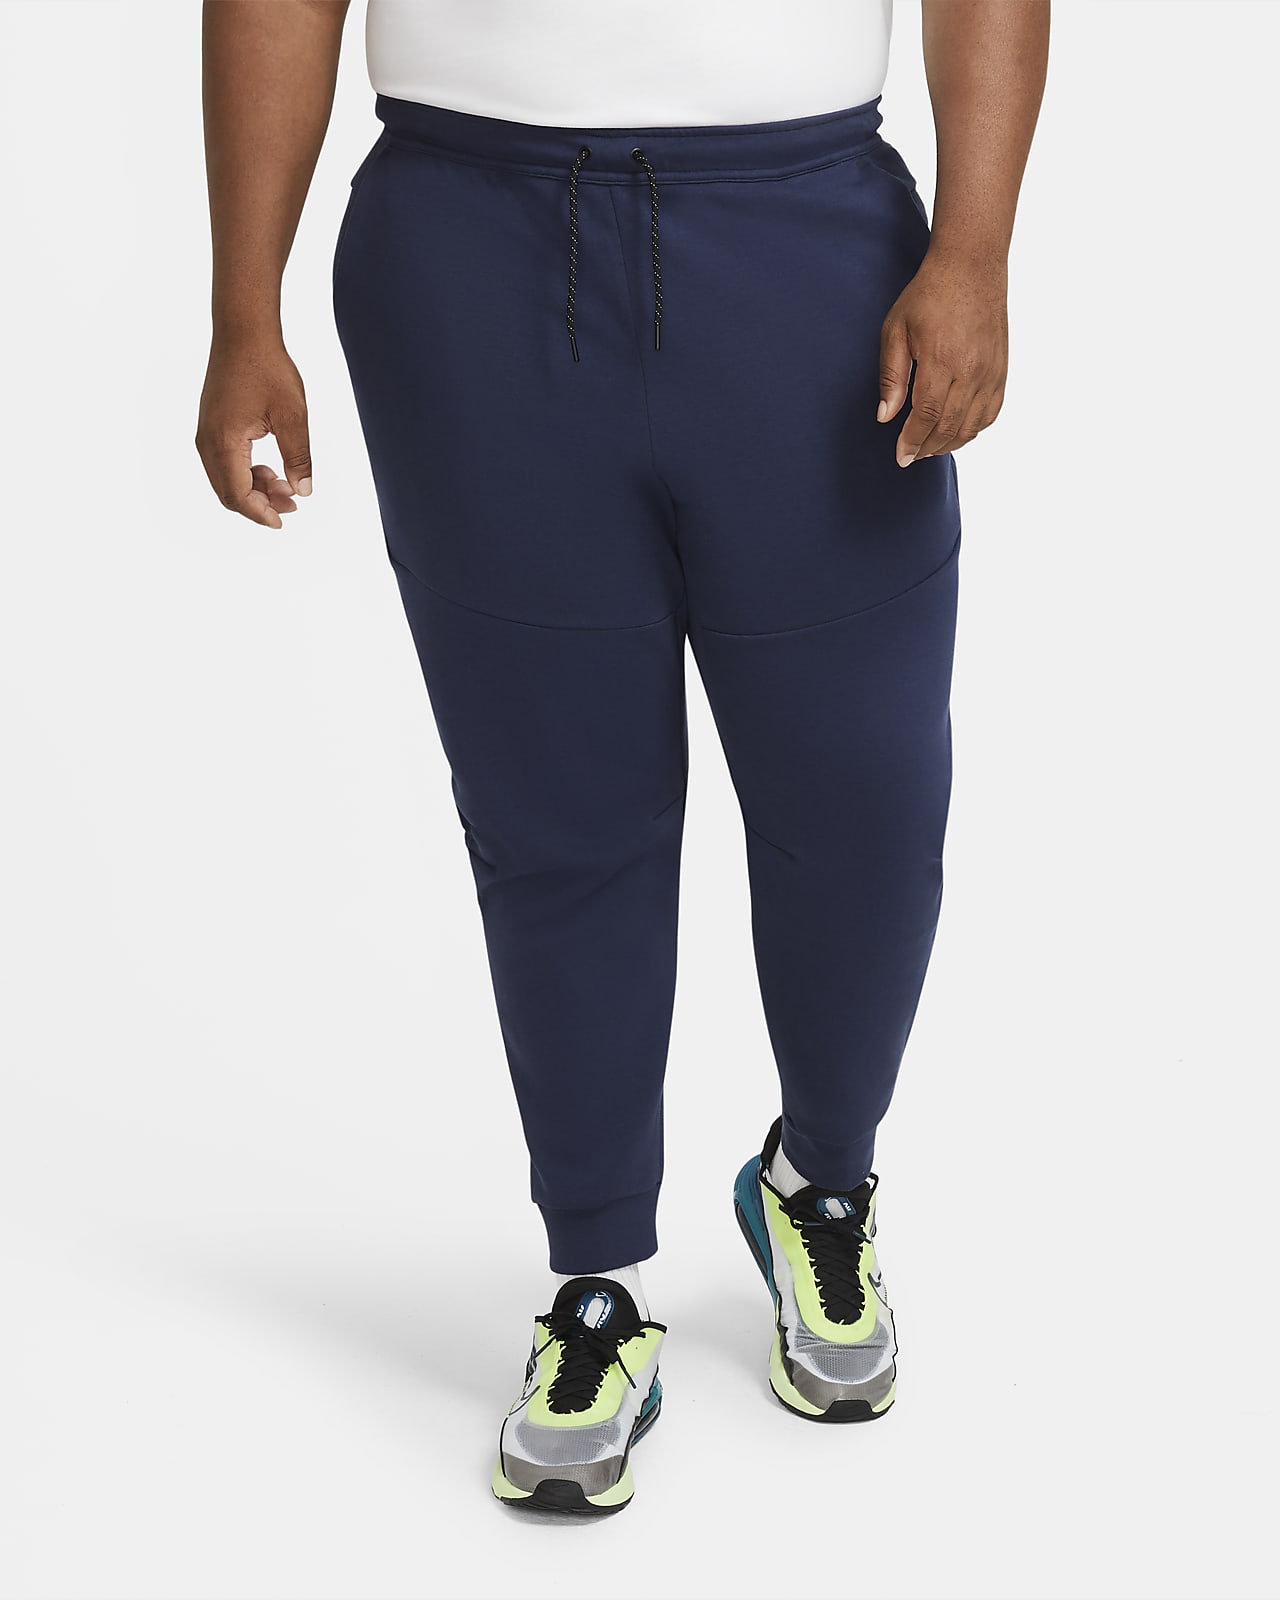 Nike Sportswear Tech Fleece Joggers Pants Black Grey CU4495-016 Men's Sz  XXL